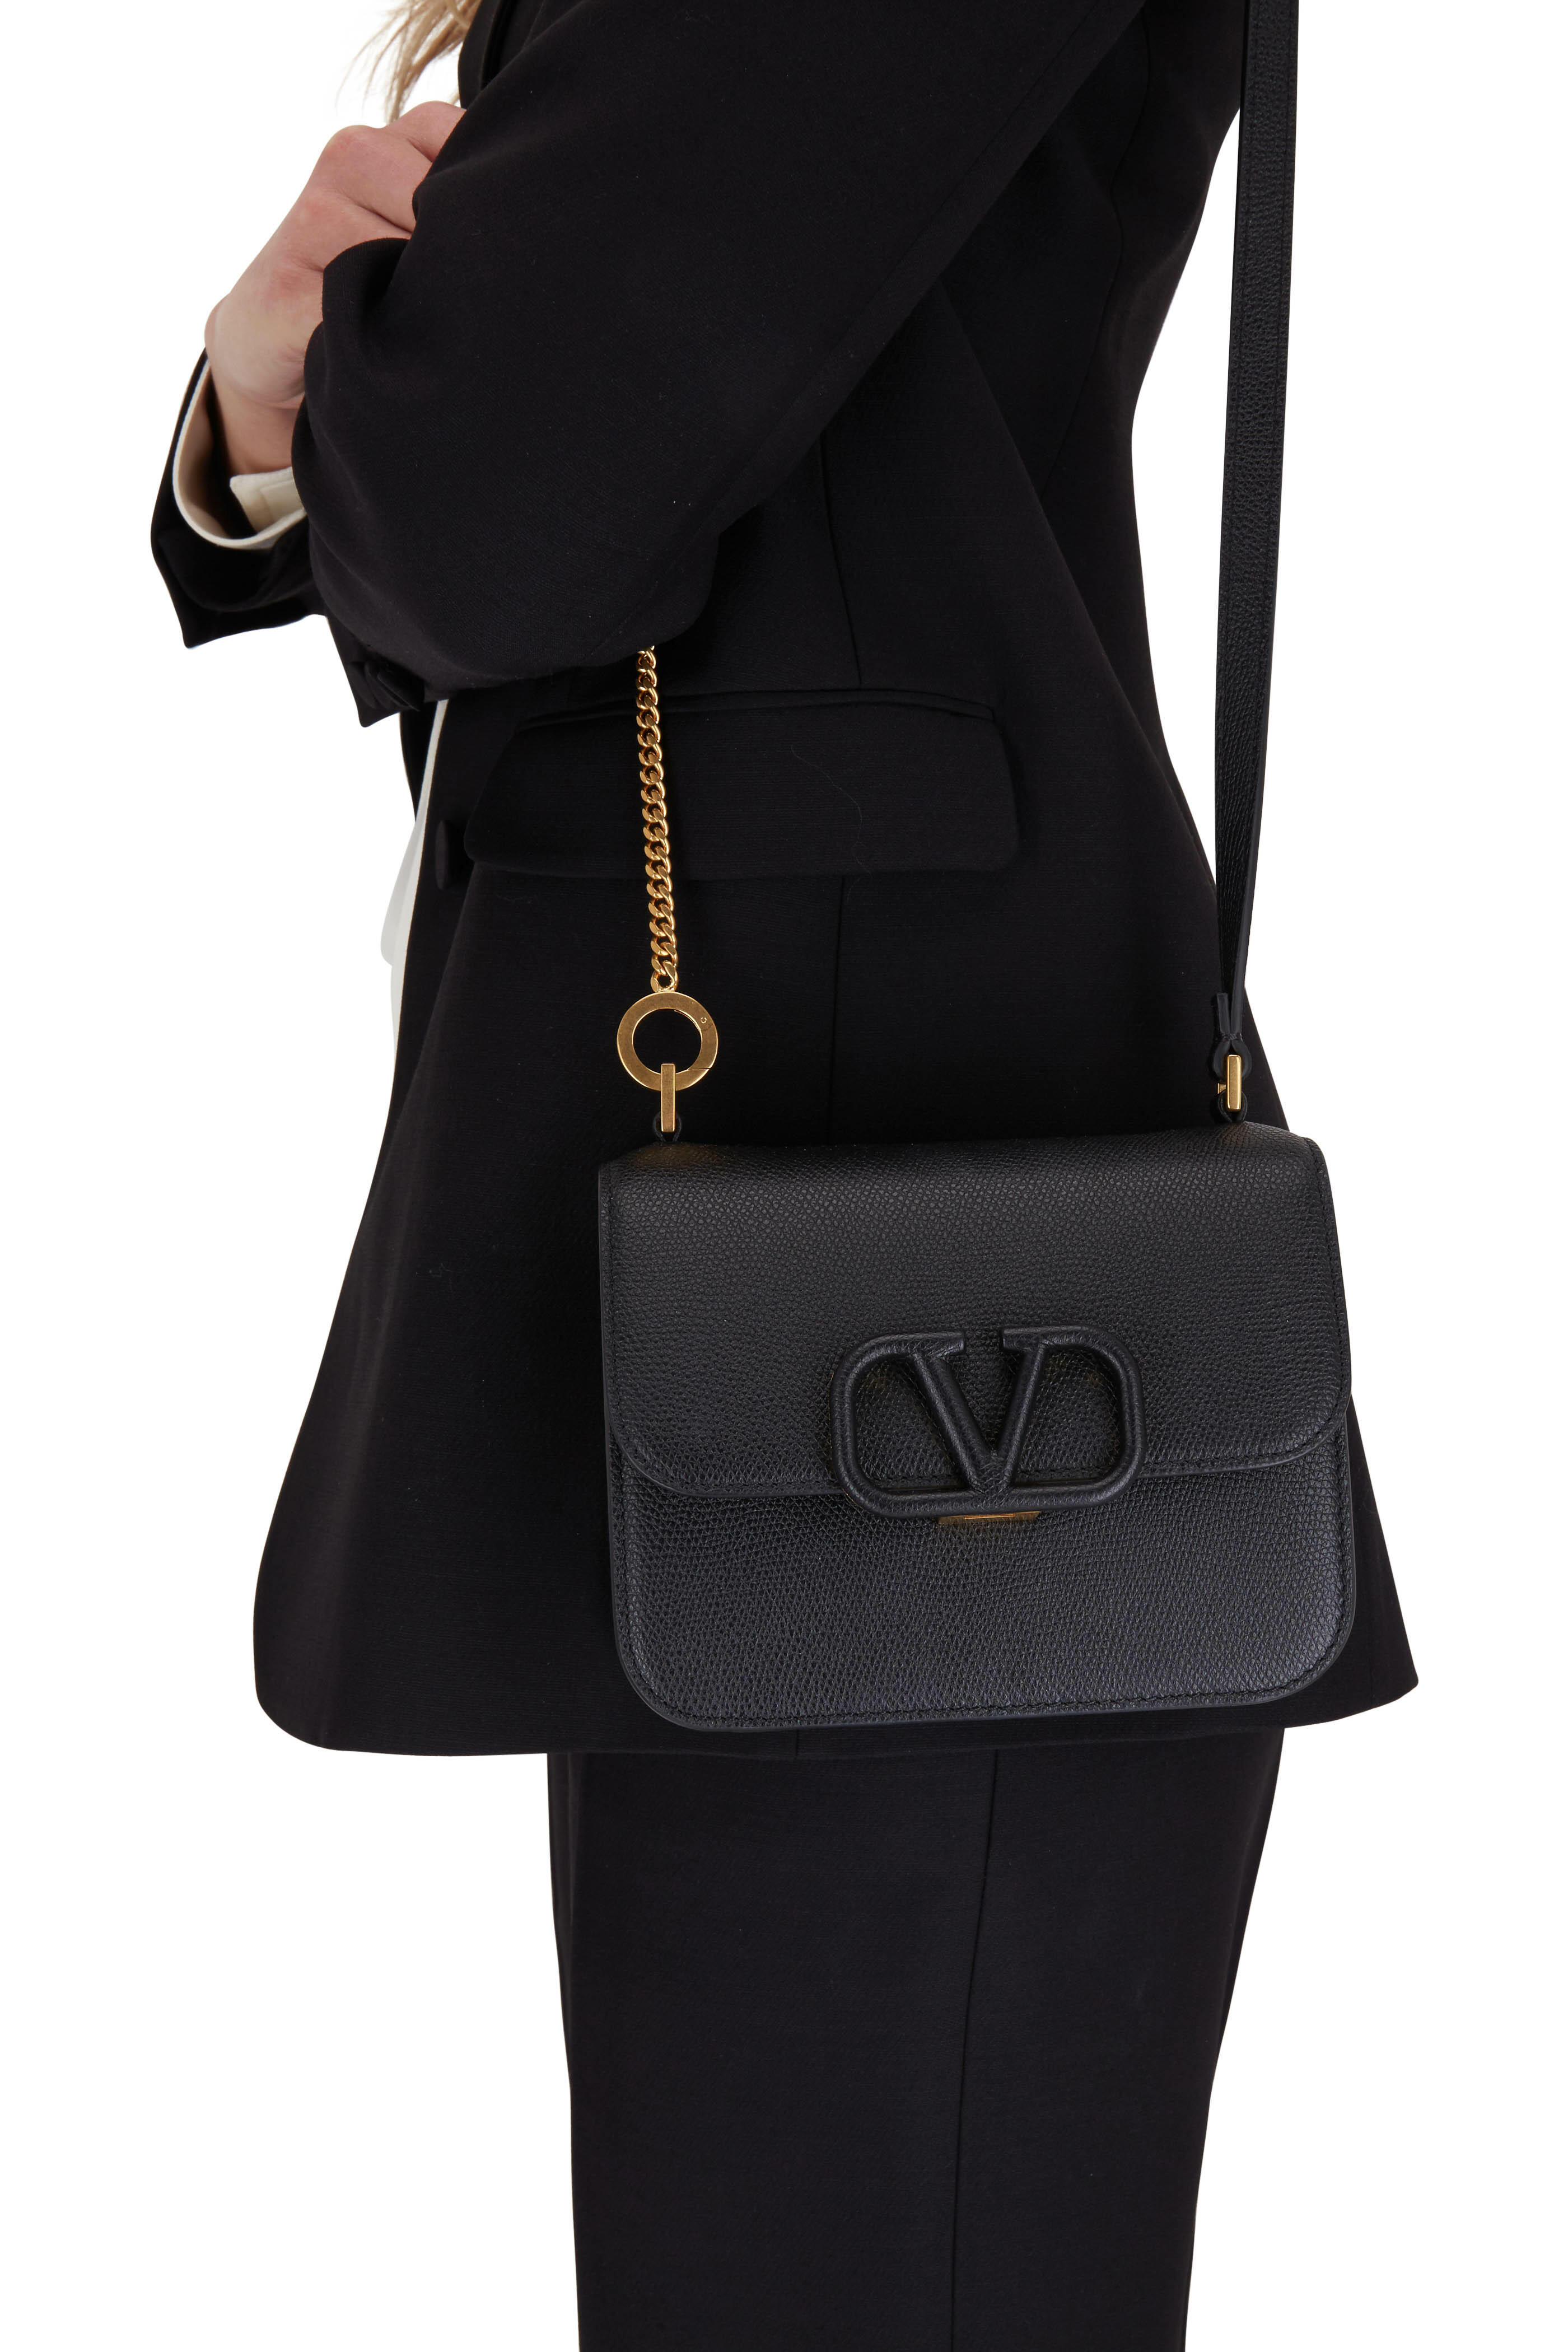 Valentino Garavani - V-Sling Black Grained Leather Small Shoulder Bag